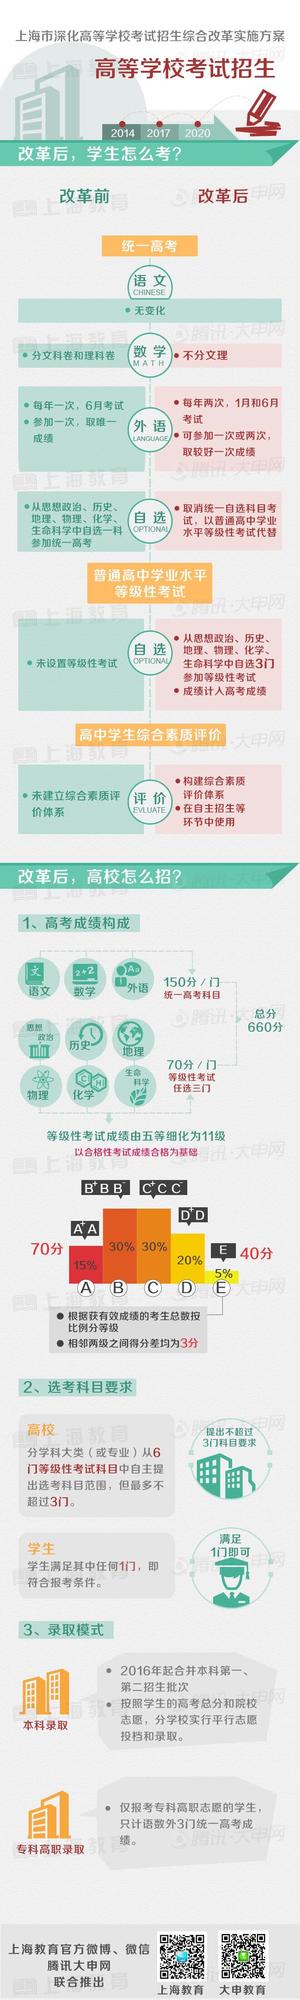 上海高考综合改革方案正式公布